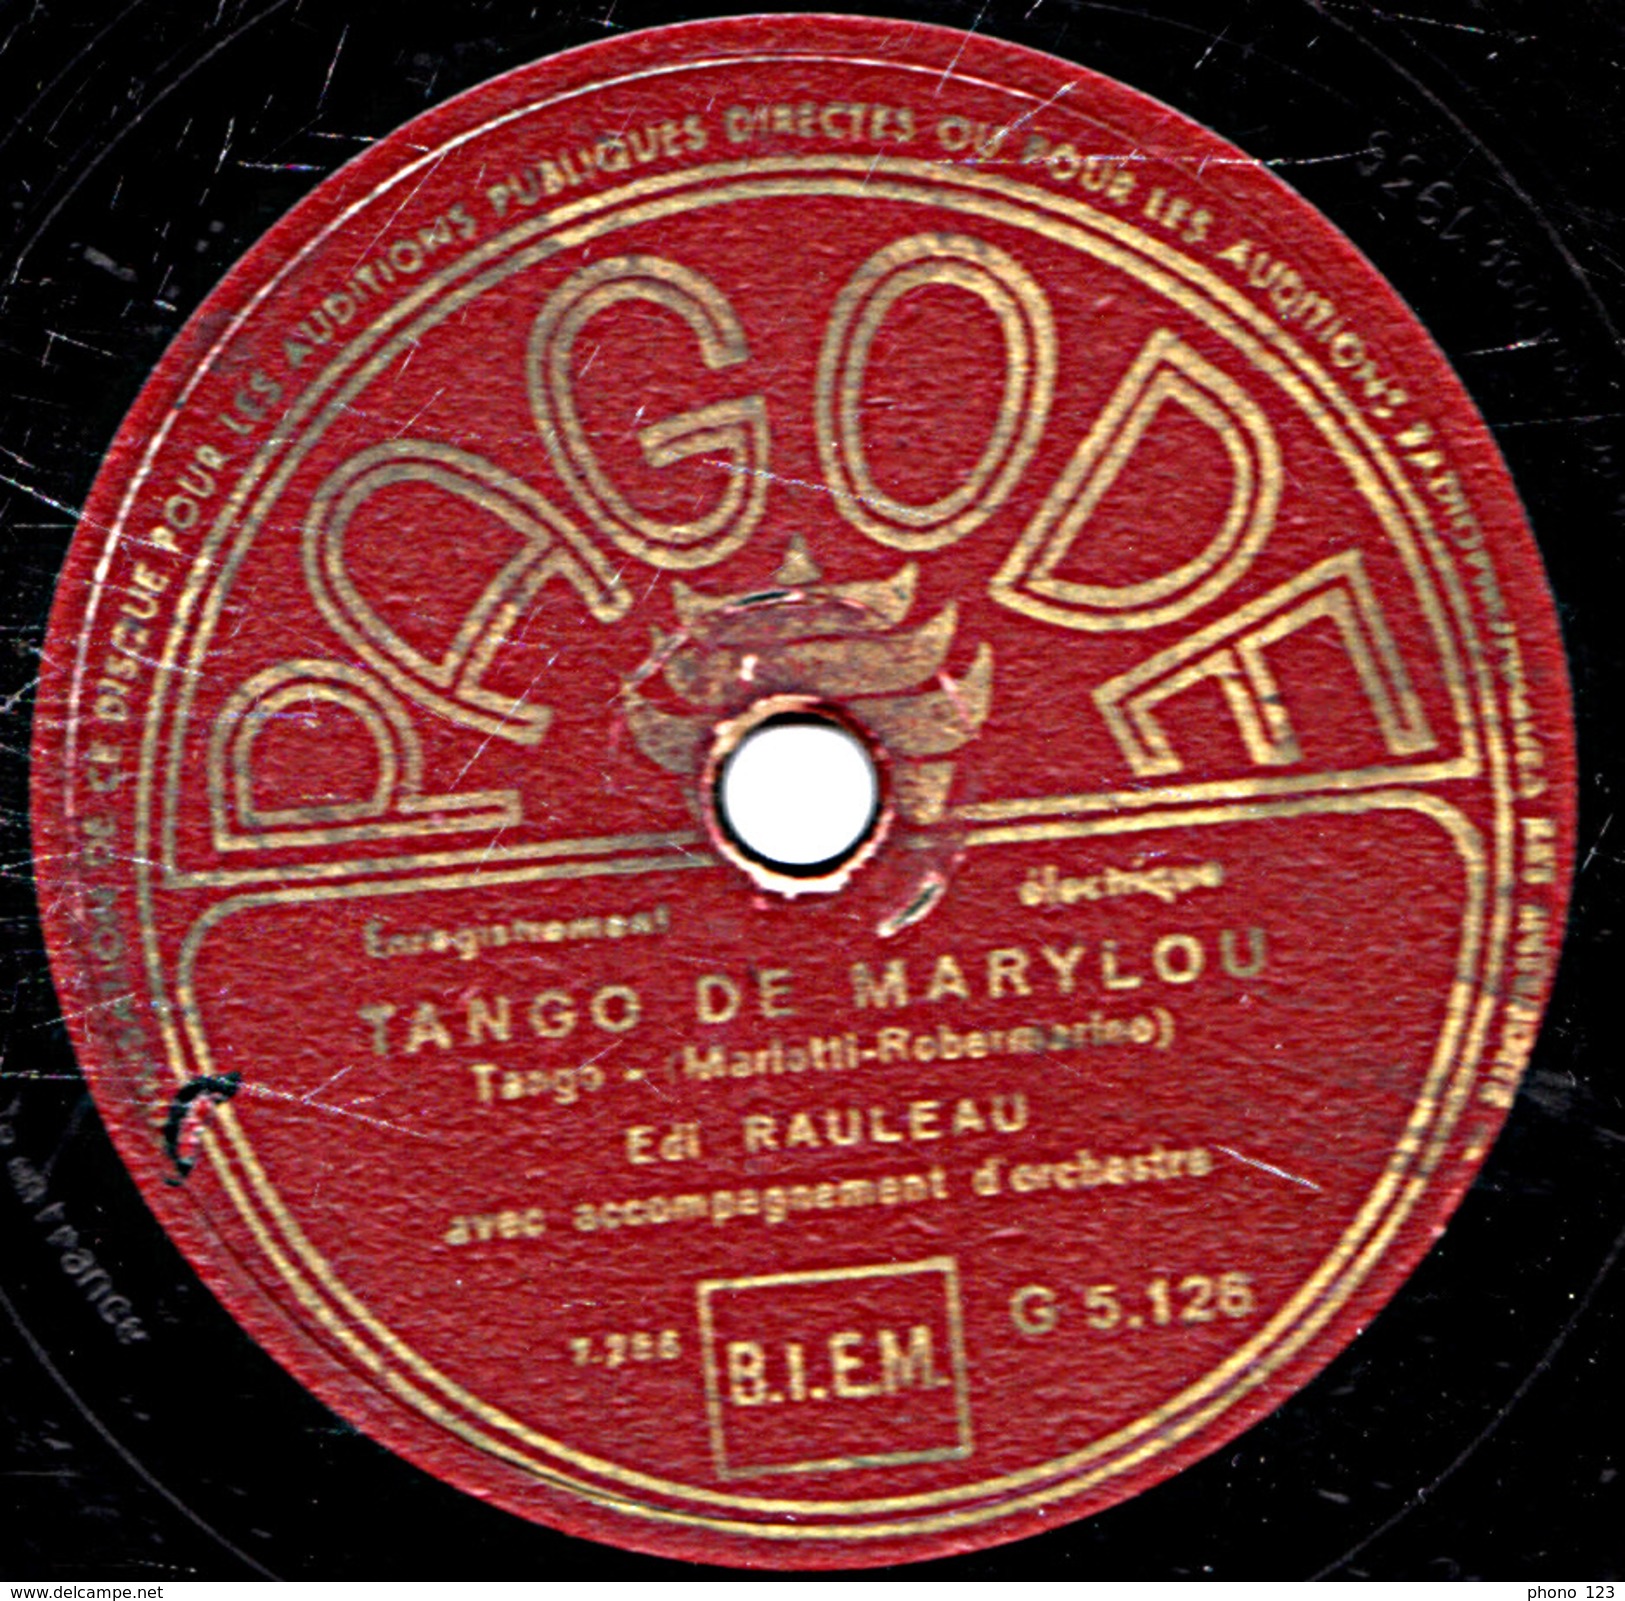 78 T. 25 Cm - état M - Edi RAULEAU - AVEC LES POMPIERS - TANGO DE MARYLOU - 78 T - Disques Pour Gramophone